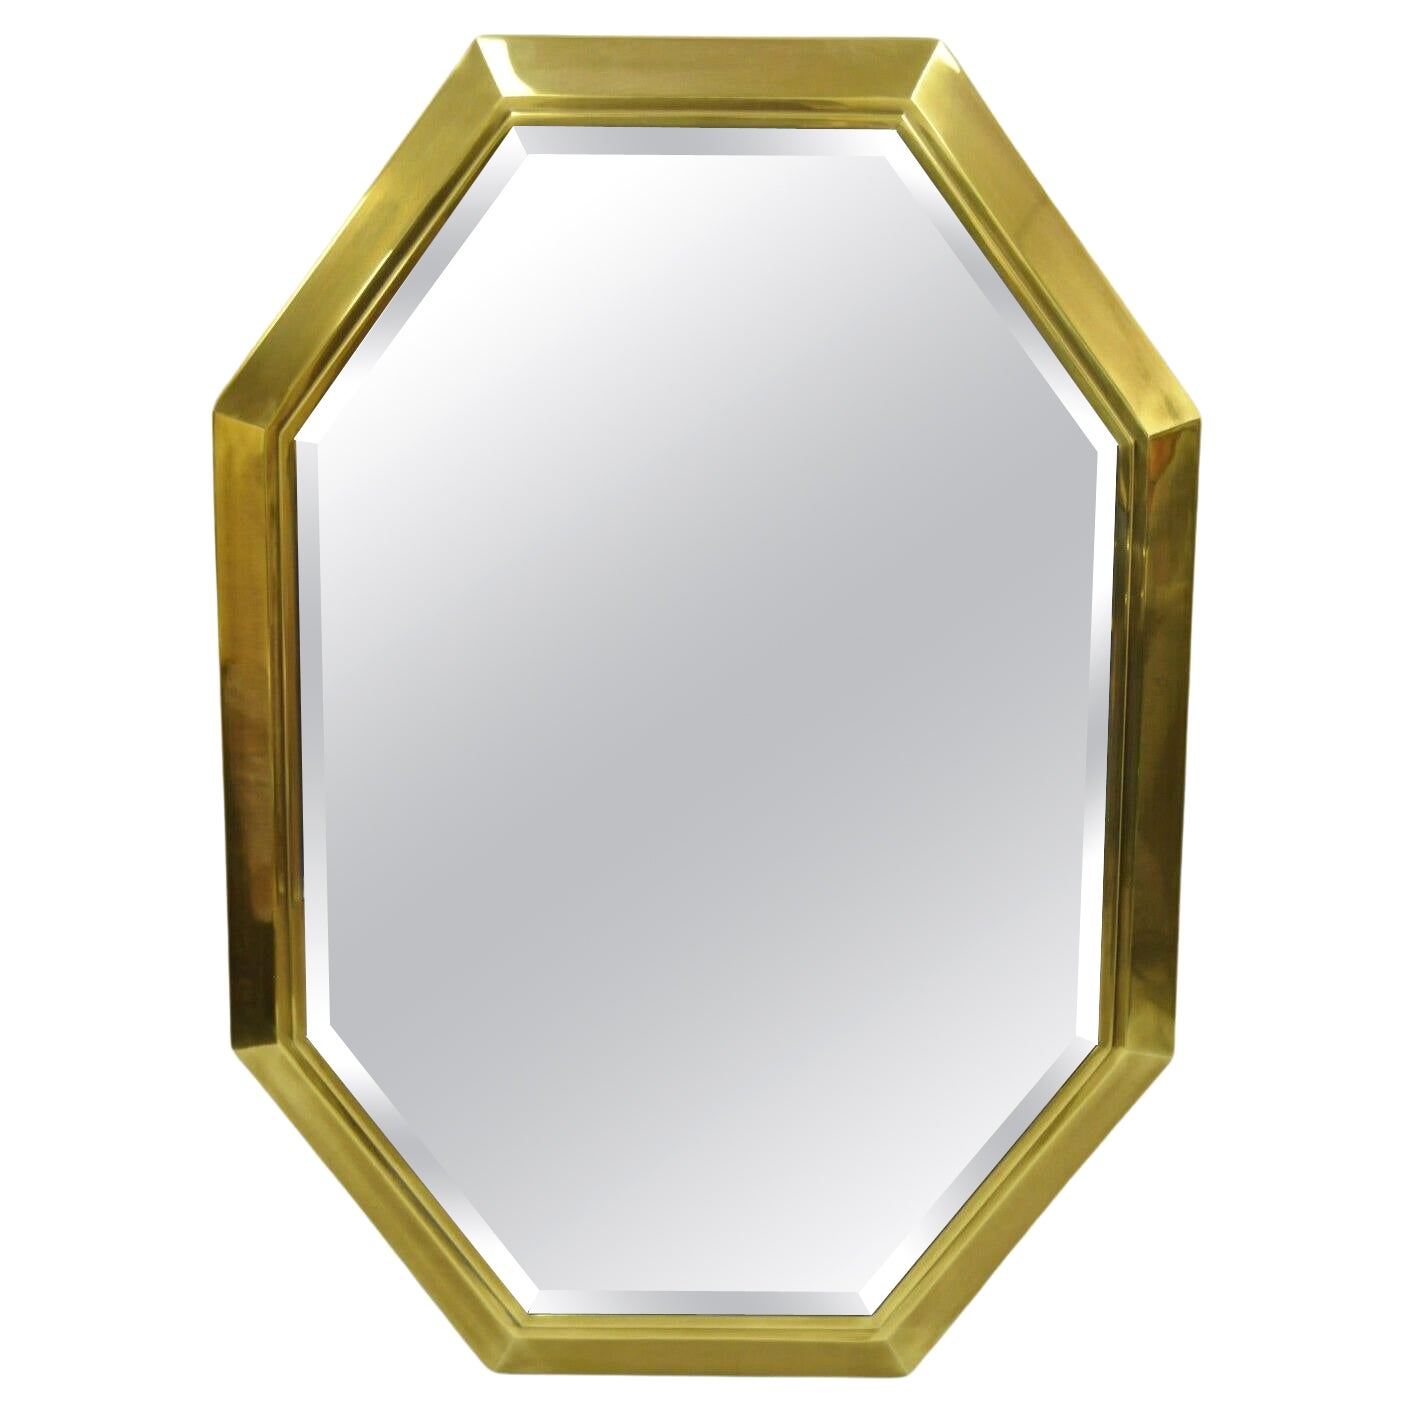 Mastercraft Brass Octagonal Frame Wall Mirror Attr. Bernhard Rohne